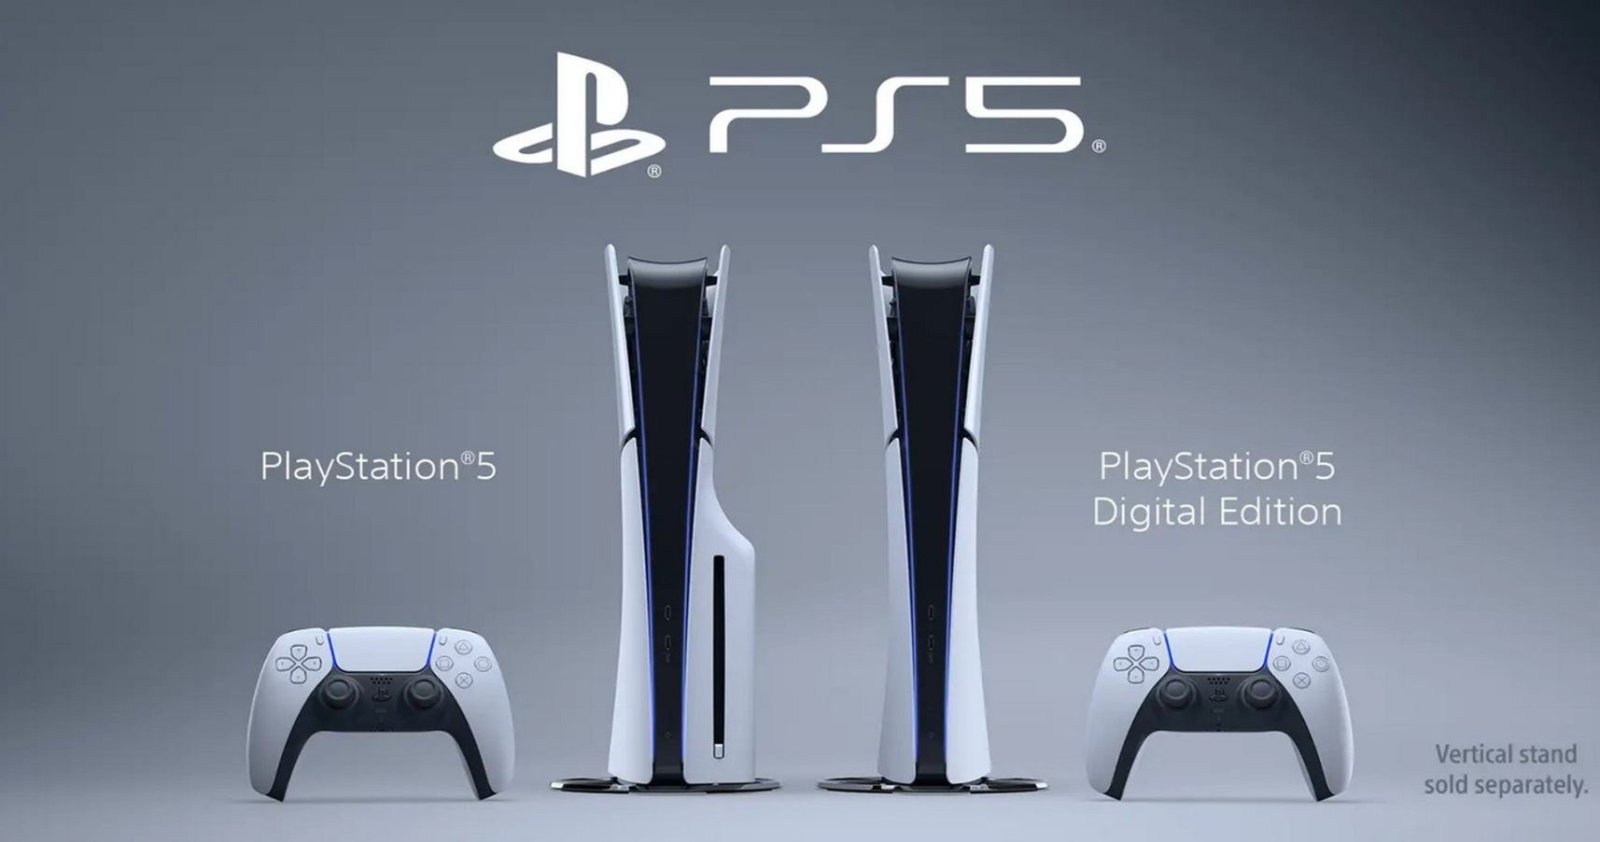 3 ปีผ่านไป ในที่สุด Sony ก็ประกาศว่า ปัญหาขาดแคลน PlayStation 5 ได้จบลงแล้ว!